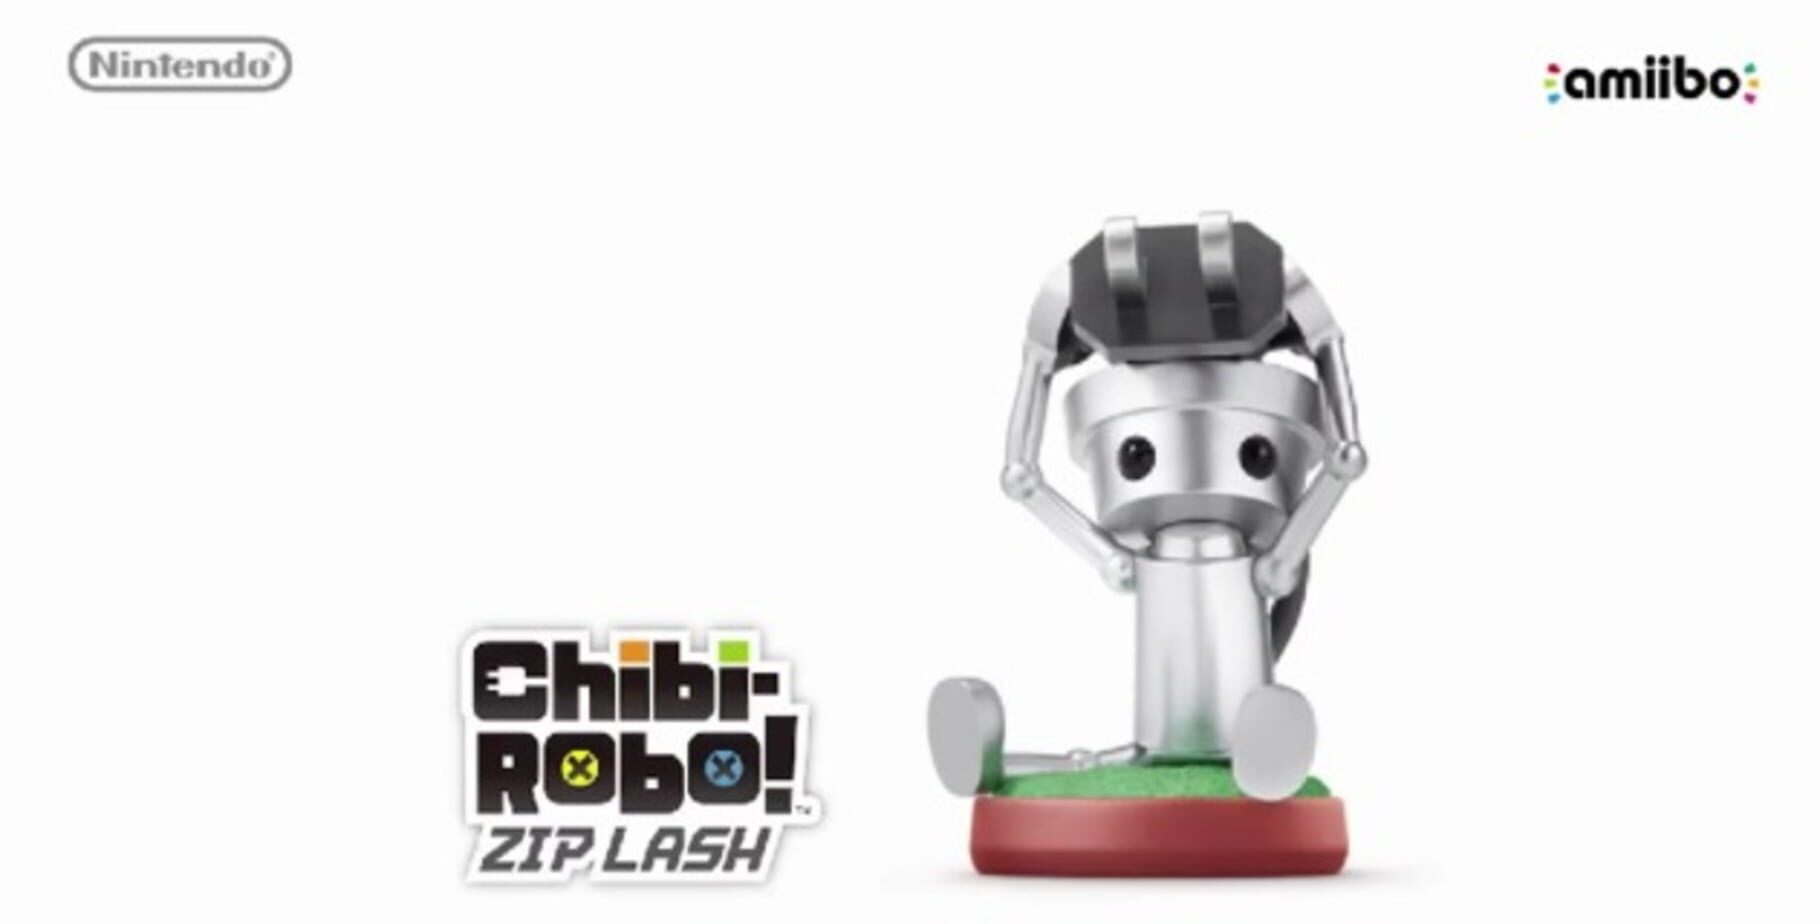 Screenshot for Chibi-Robo! Zip Lash